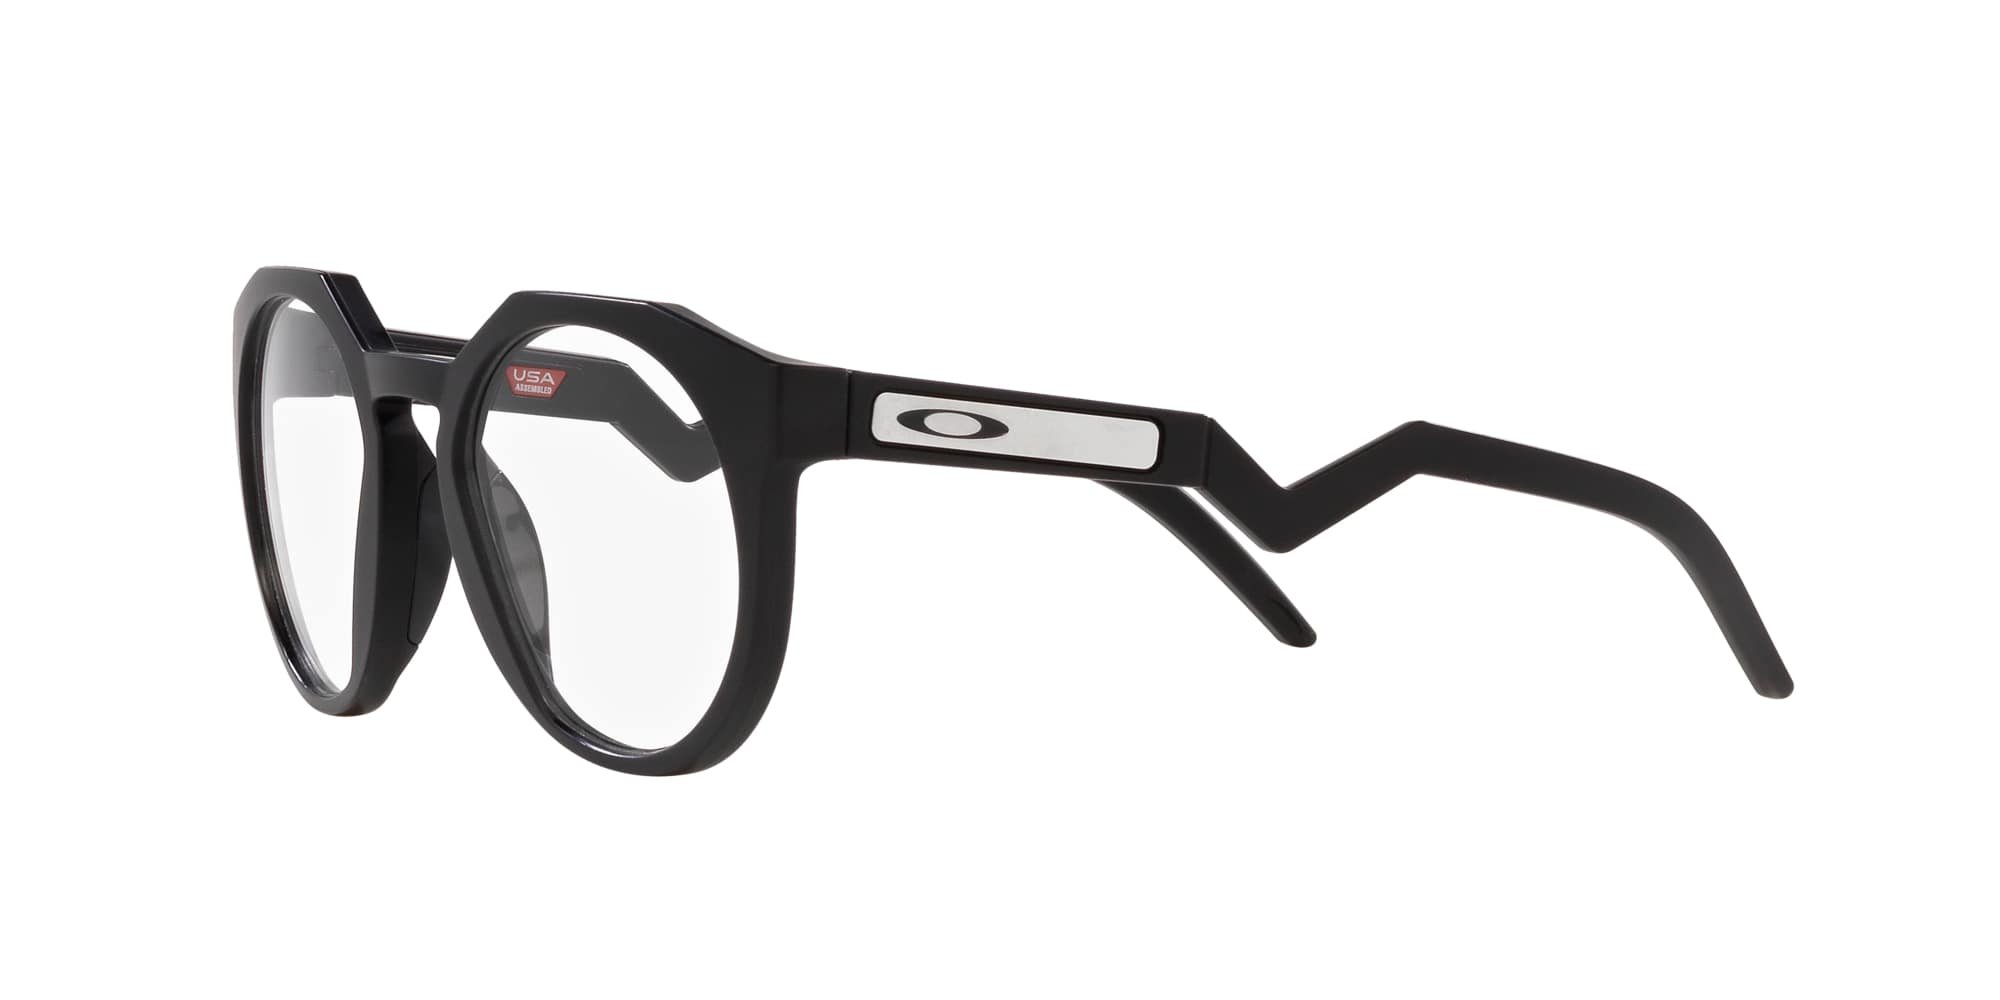 Das Bild zeigt die Korrektionsbrille OX8139 813901  von der Marke Oakley  in matt schwarz.